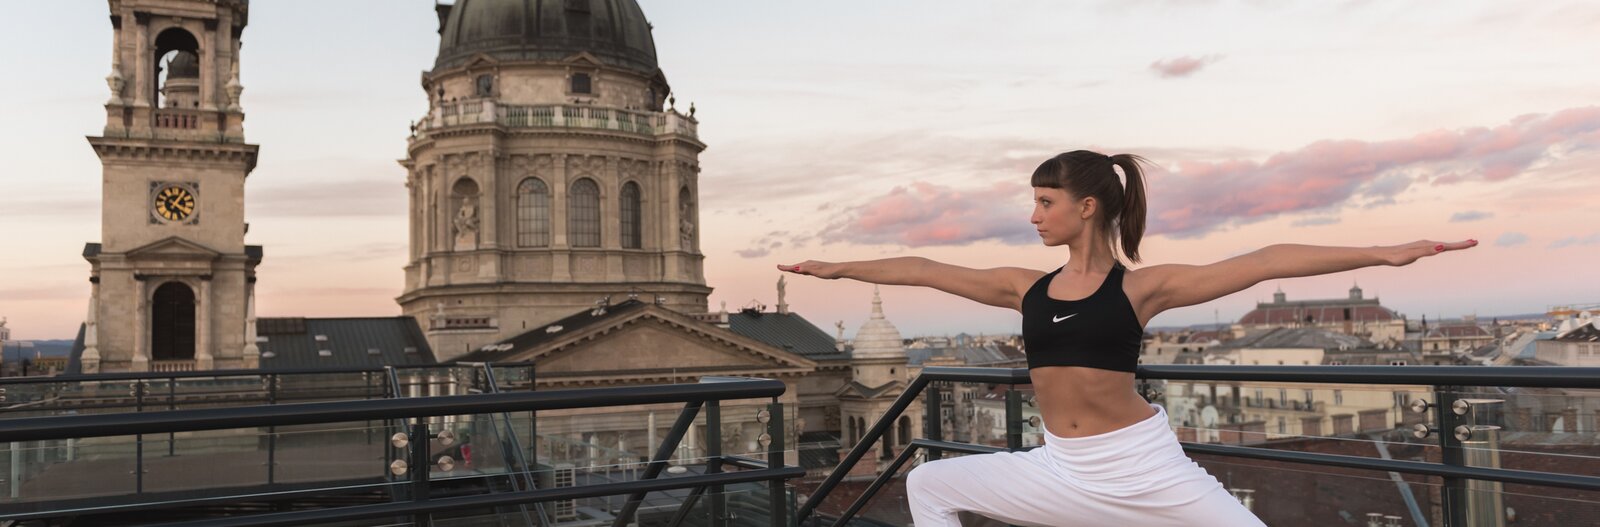 Jógára fel! – 6 szabadtéri jógaóra Budapesten